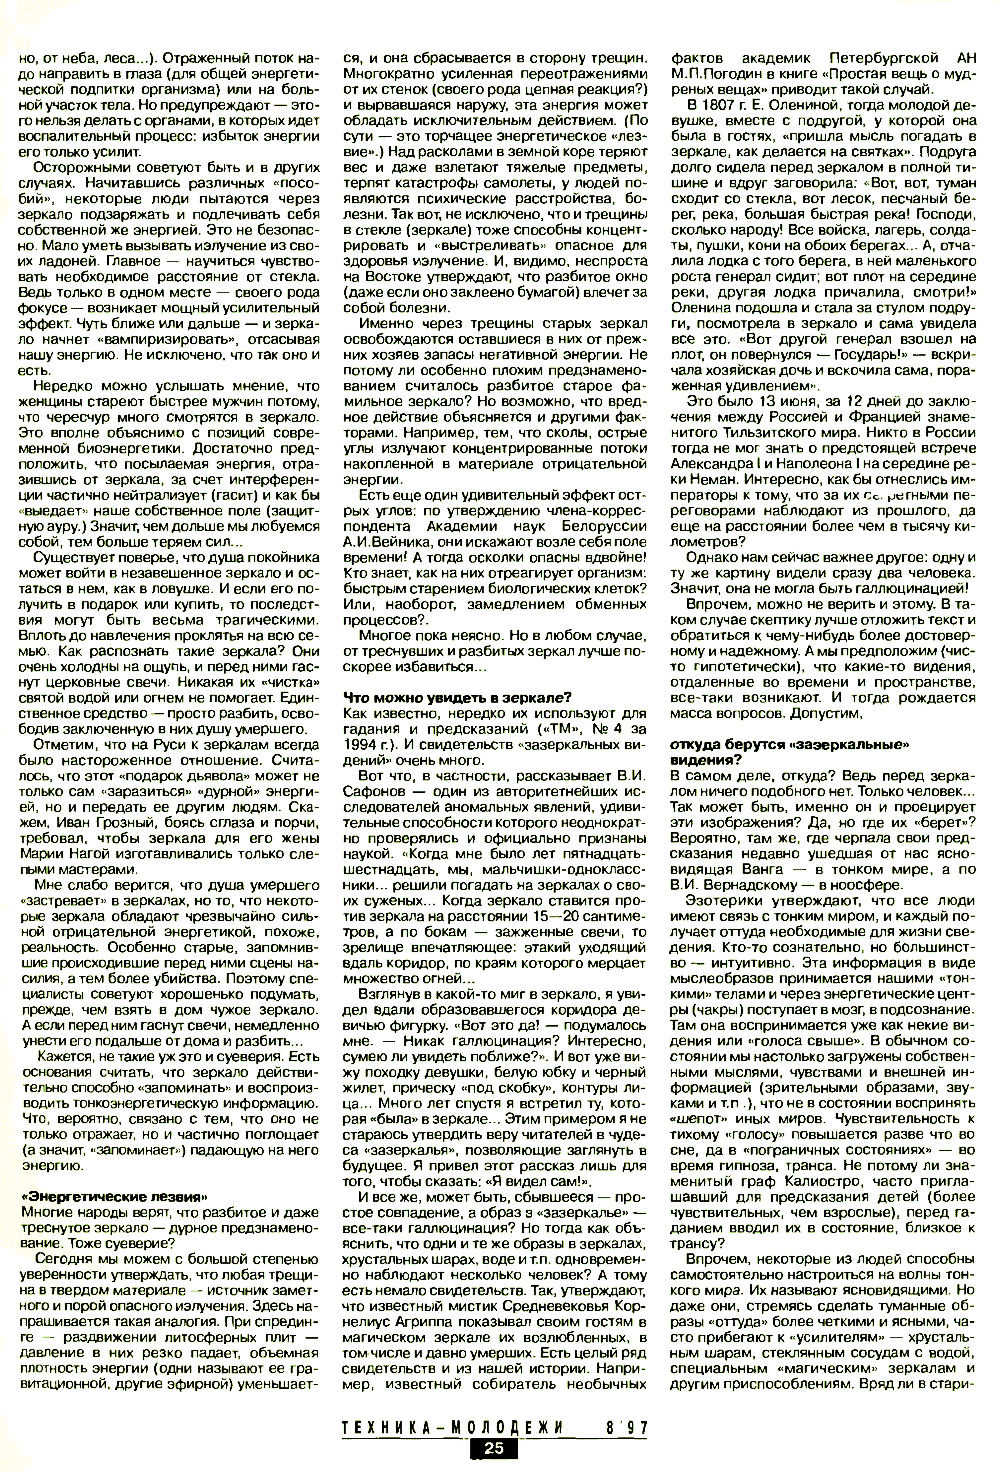 Магия зеркал. В. Правдивцев. Техника — Молодёжи, 1997, №8, с.24-27. Фотокопия №3